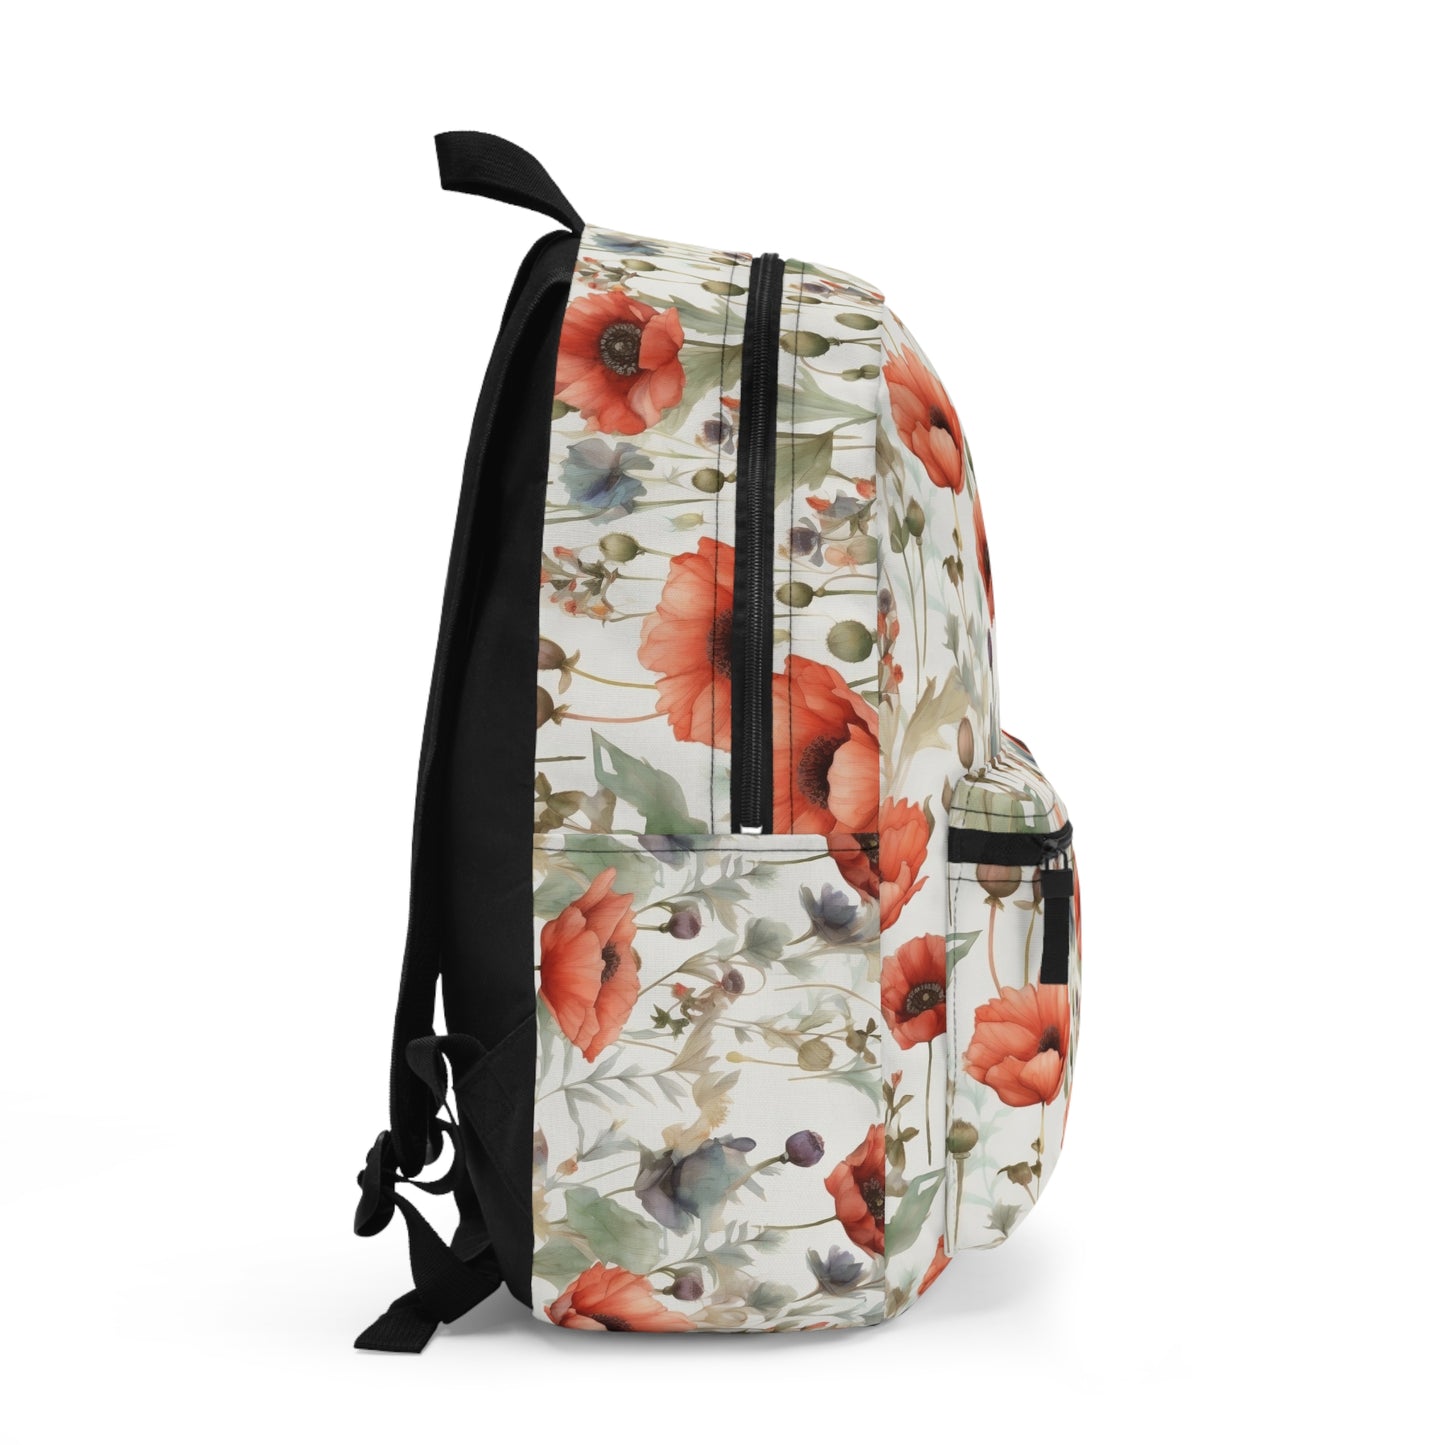 Red Poppy Backpack